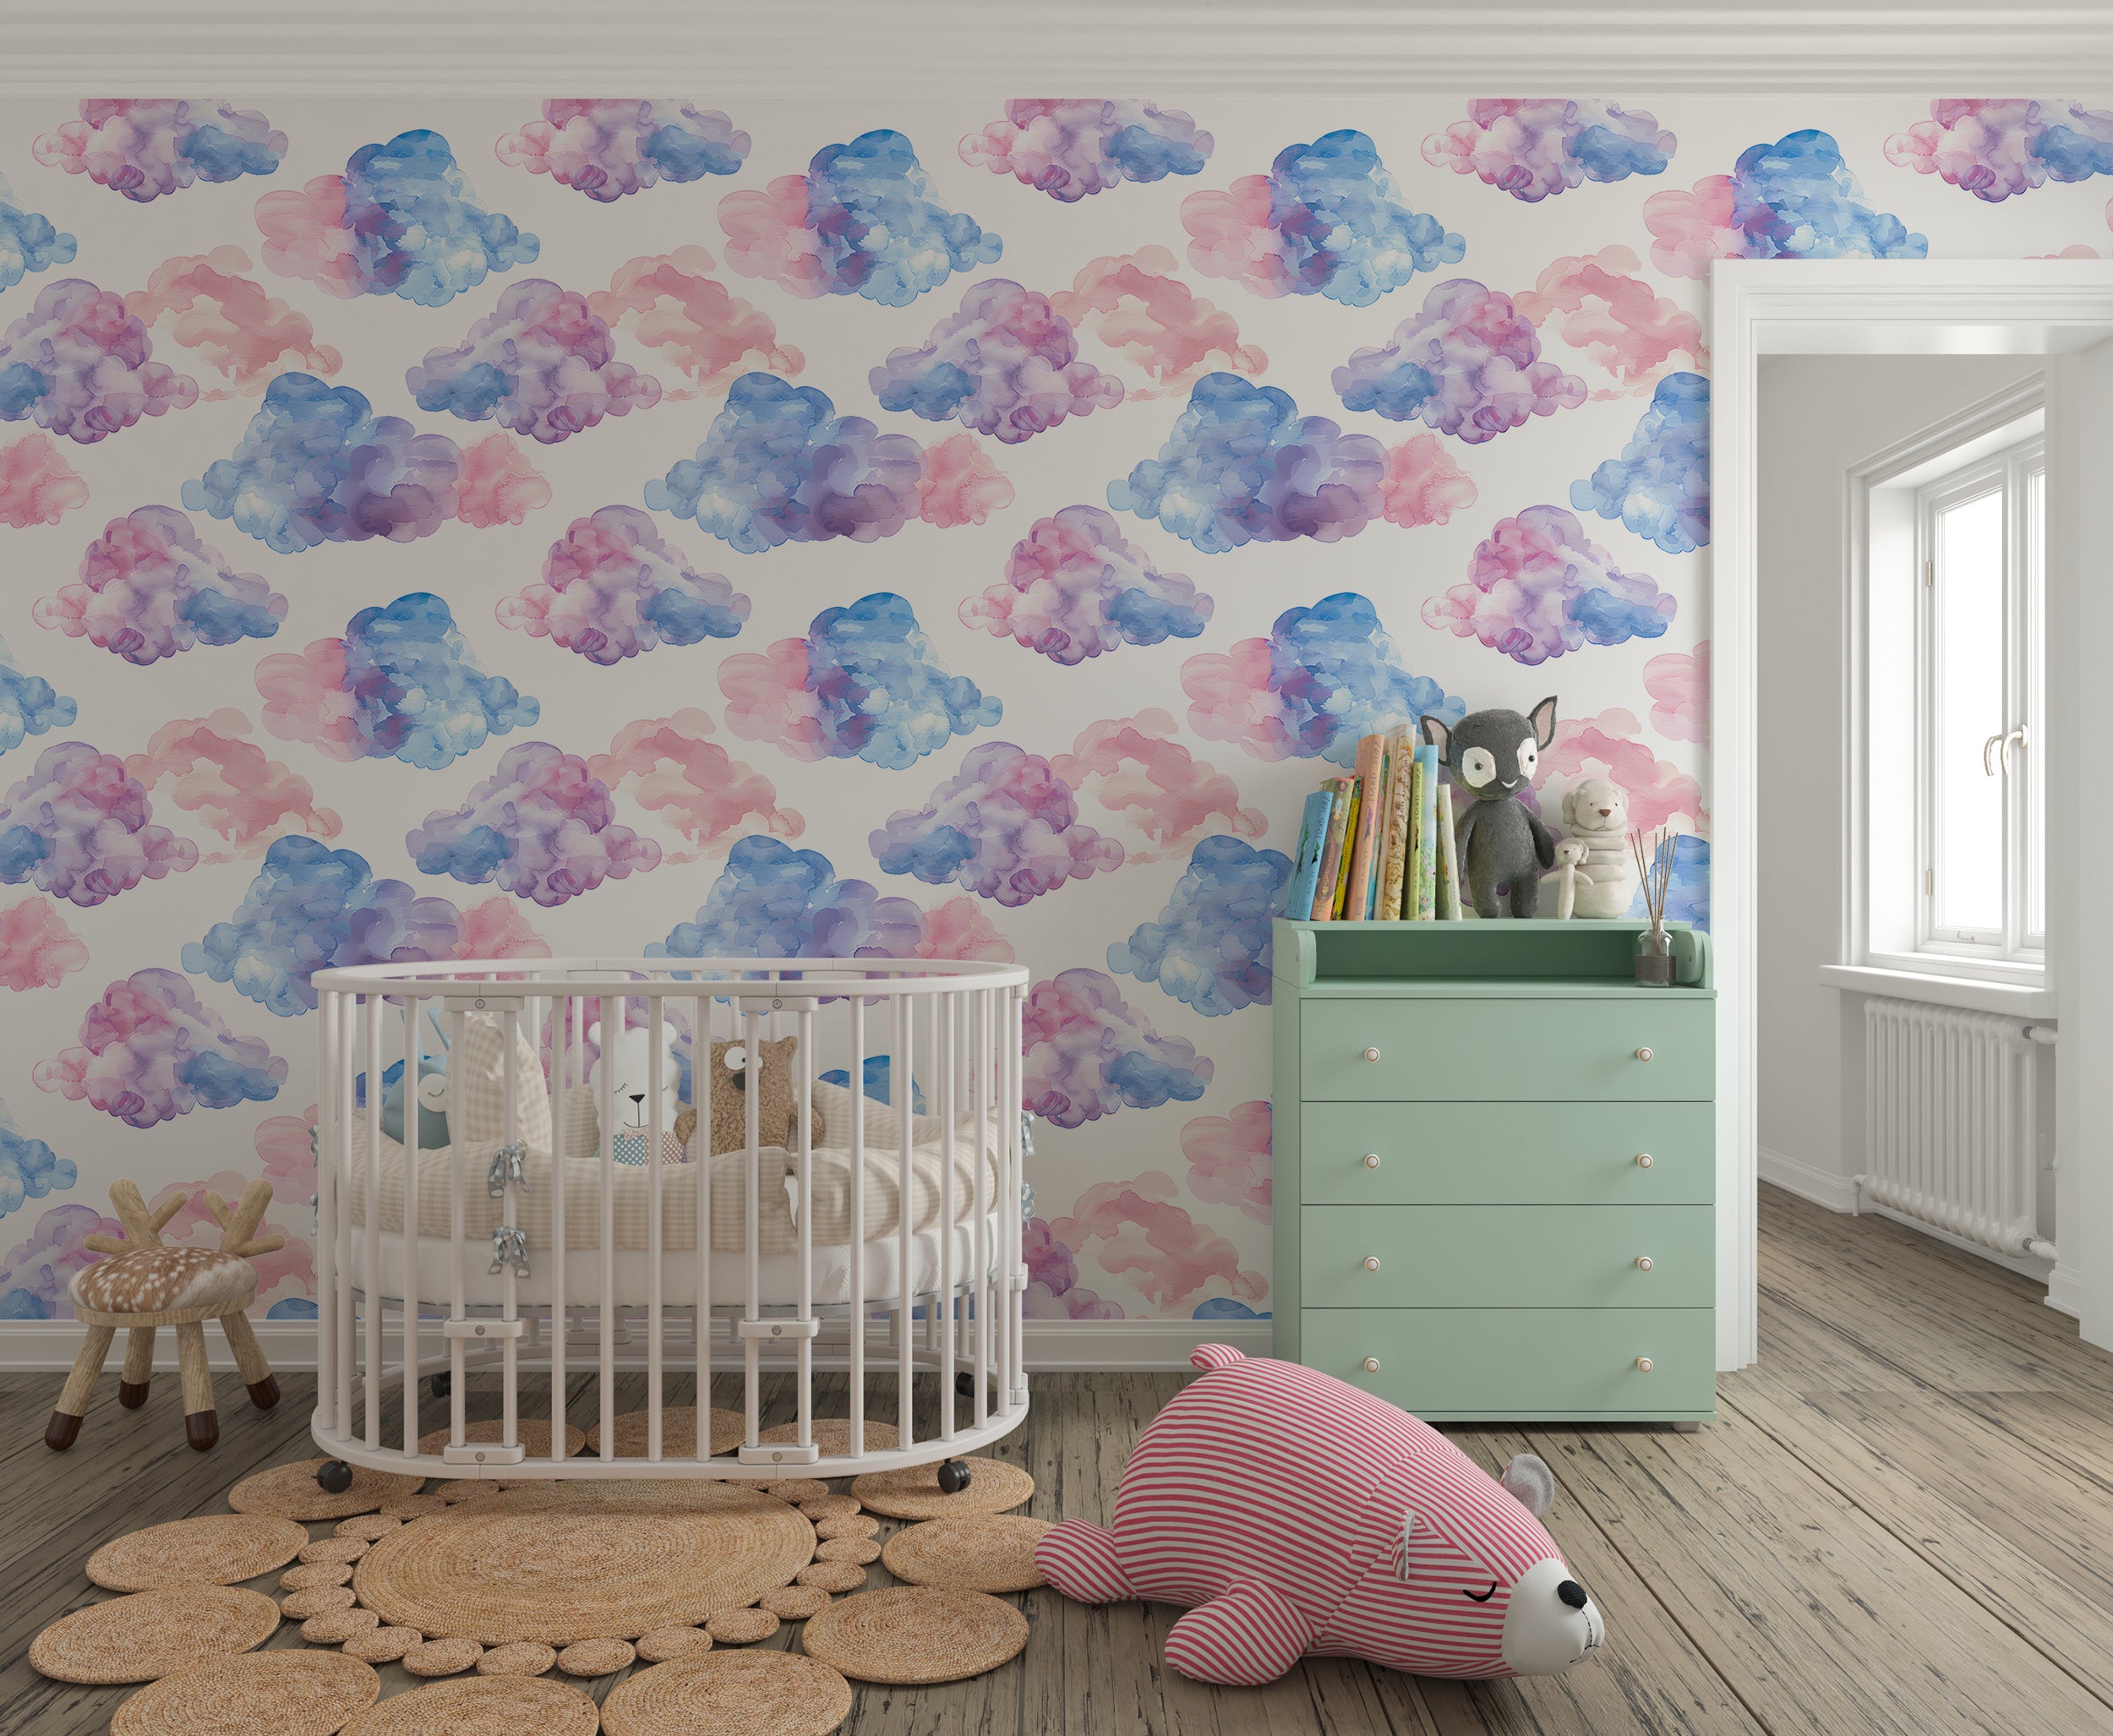 Nursery cloud pattern wall decor